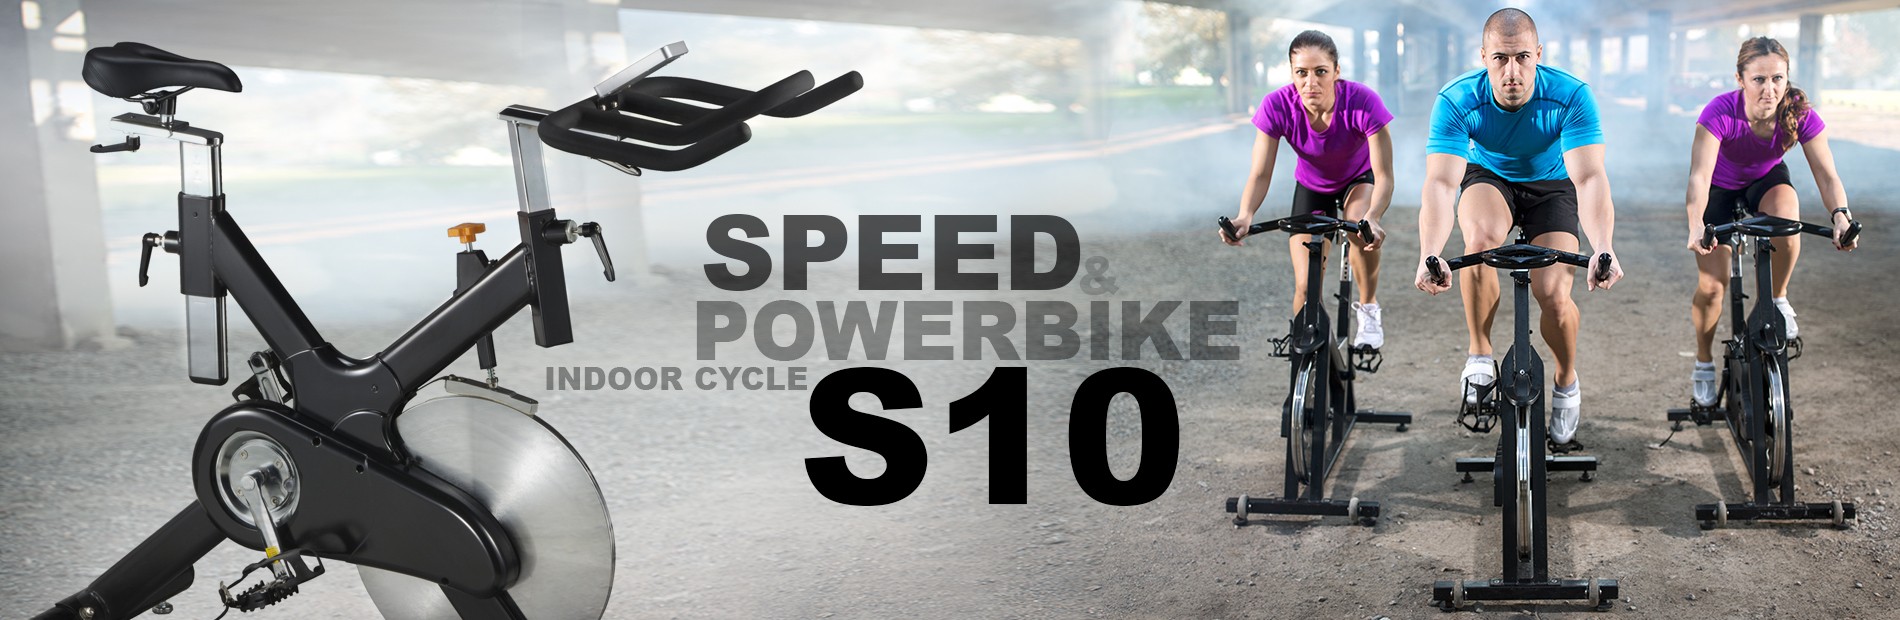 AsVIVA S10 Indoor-Cyle Speedbike Power